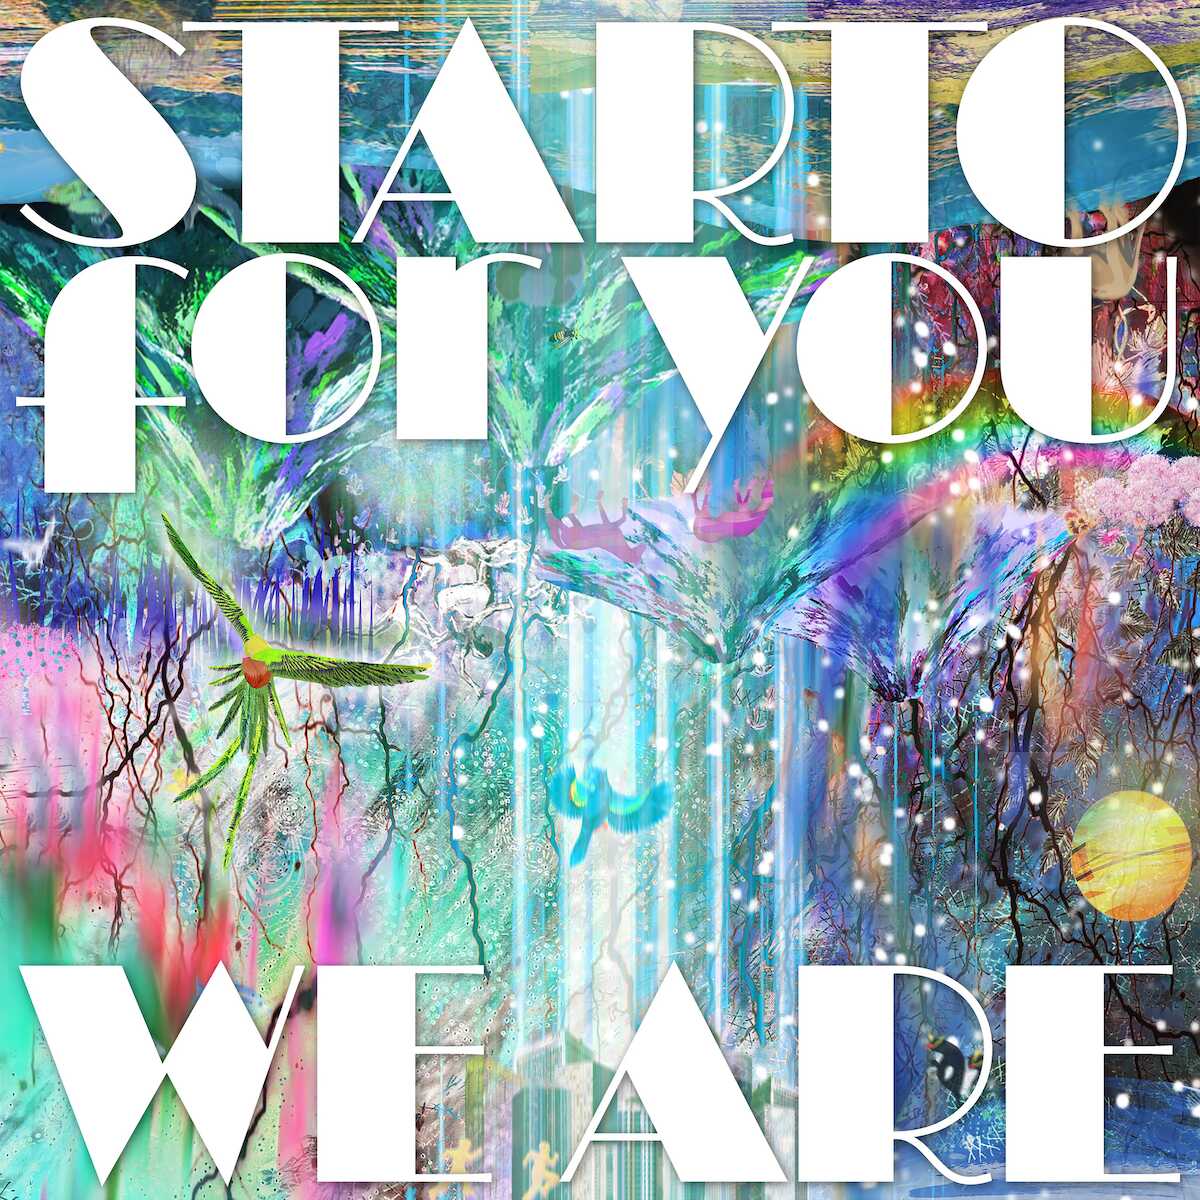 「STARTO for you」のチャリティーシングル「WE ARE」が発売!STARTO14組75人によるプロジェクト